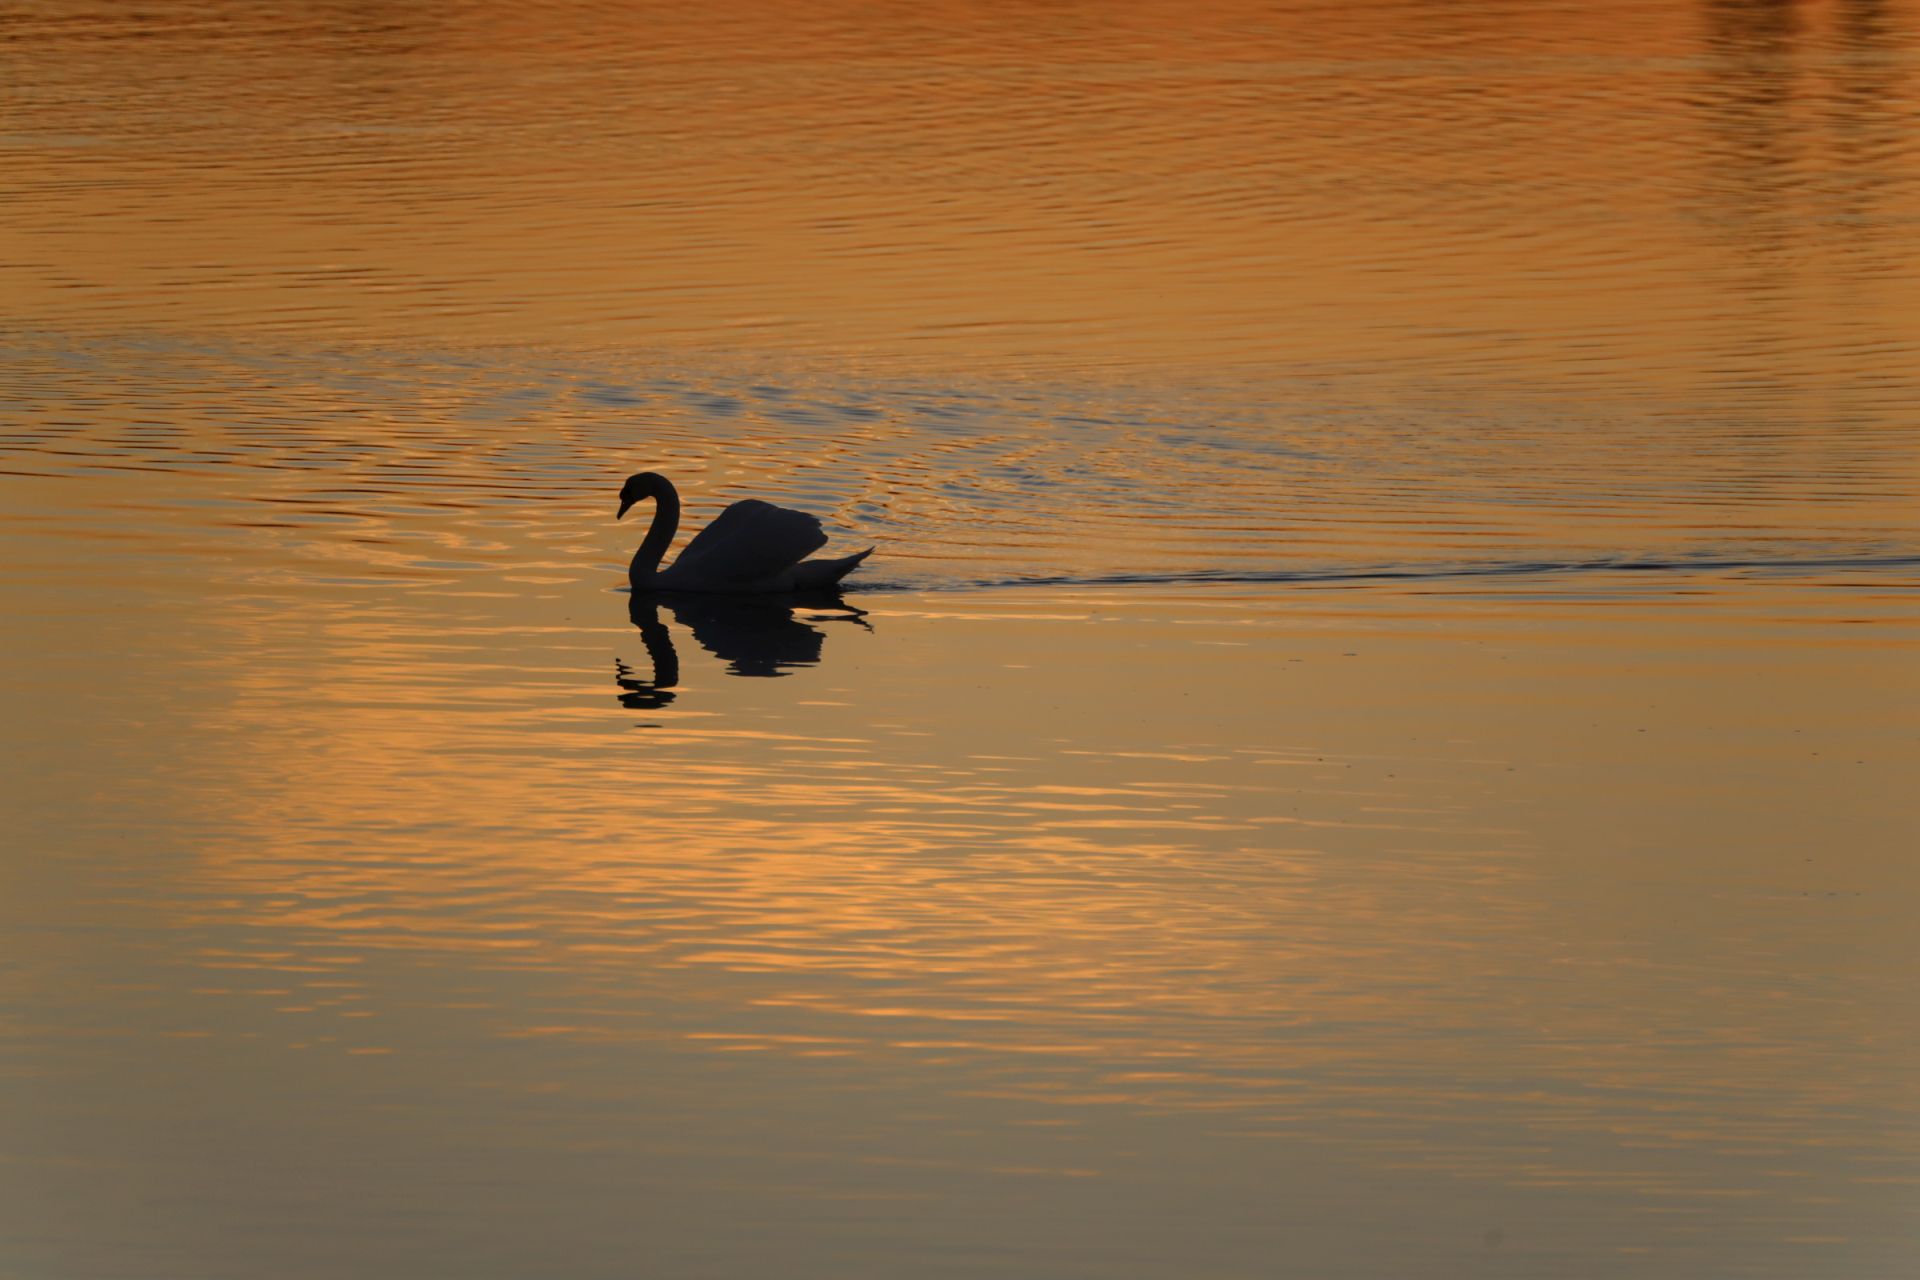 sulle scie del cigno - in the wake of the swan...